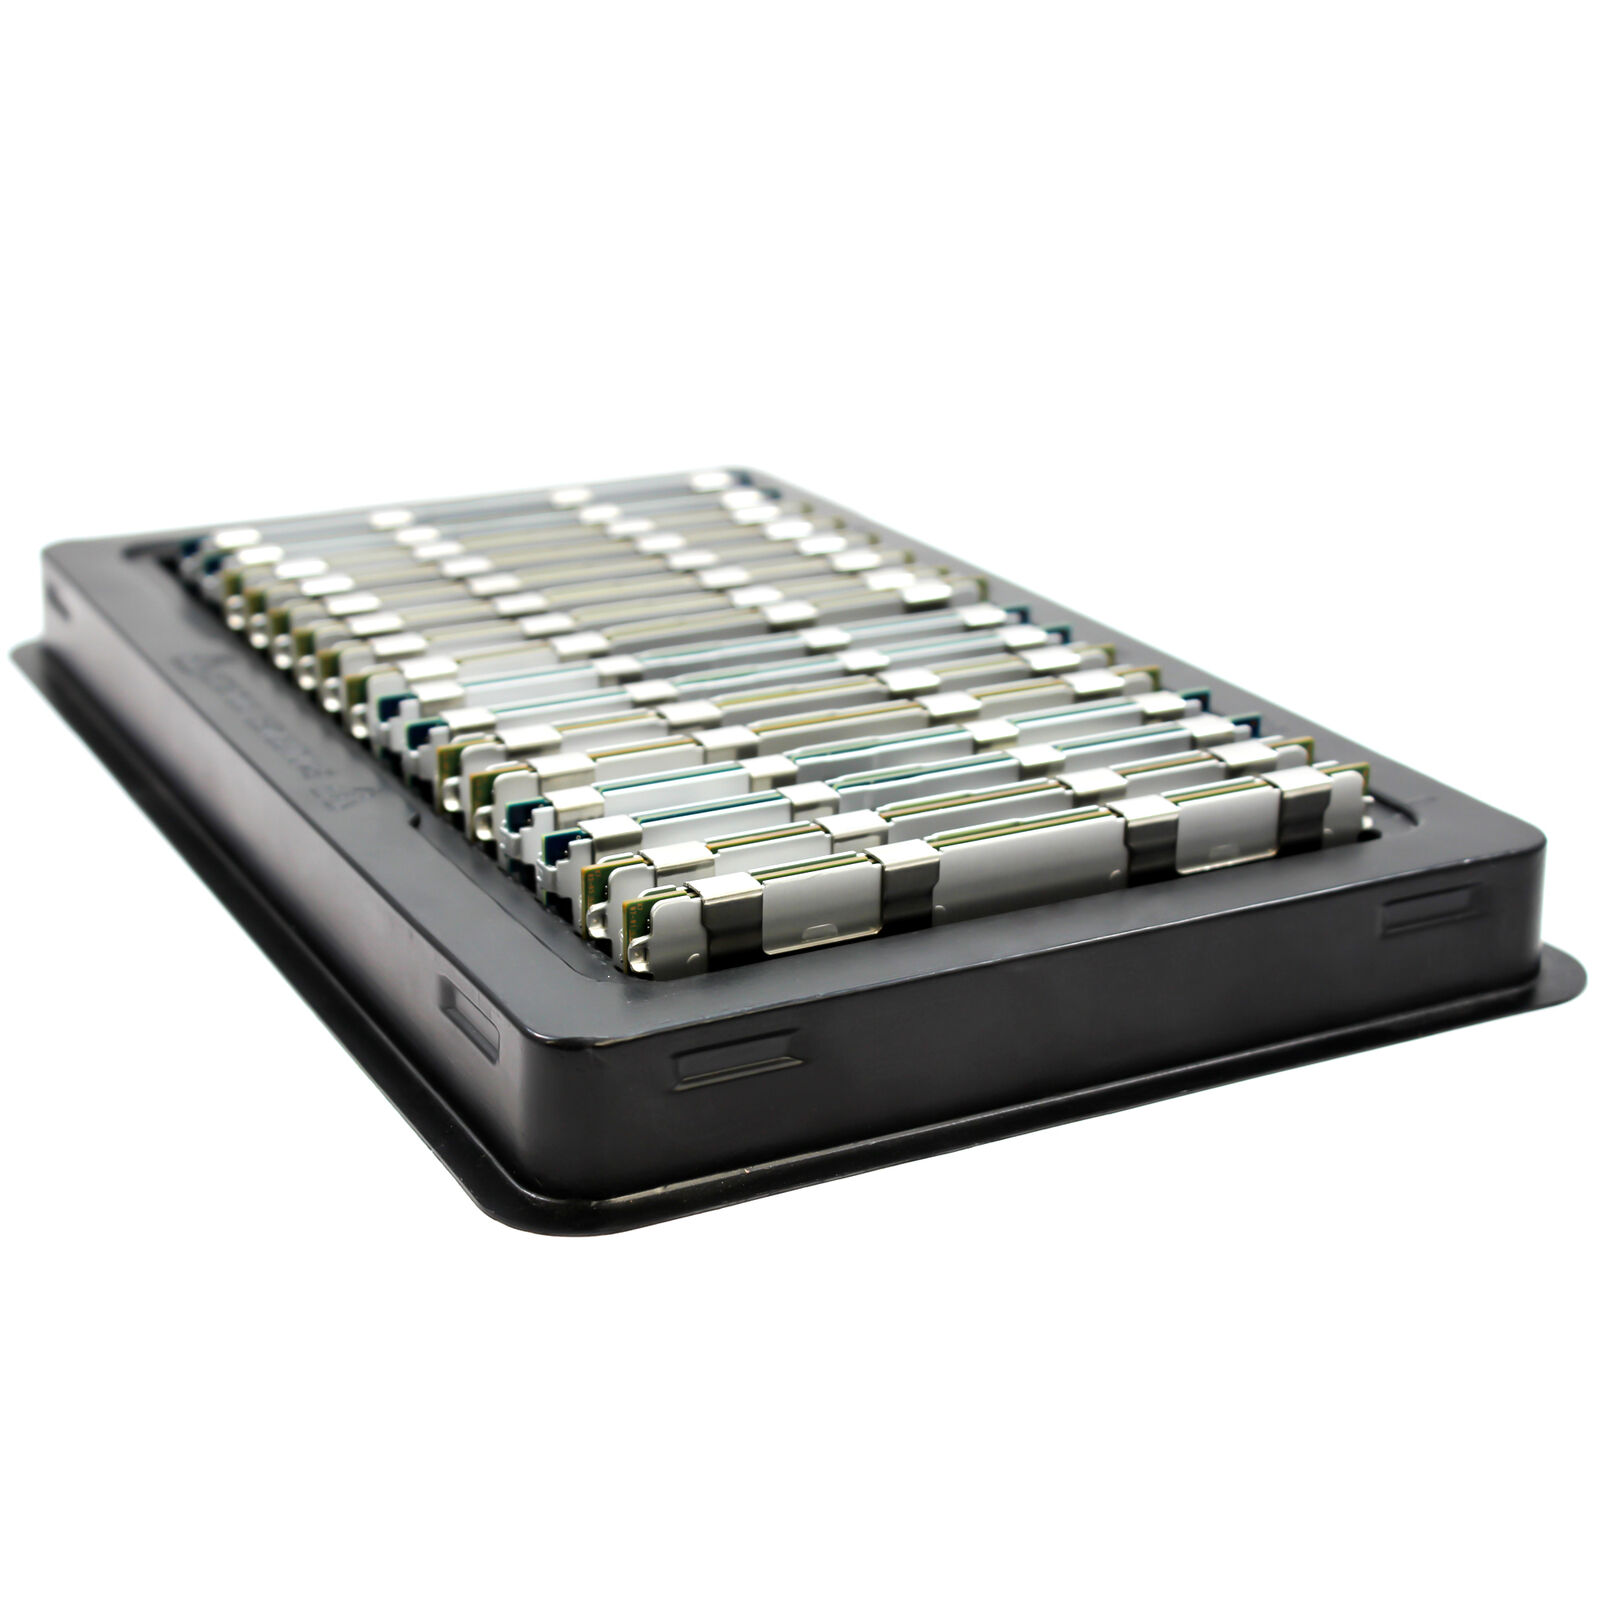 96GB (6 X 16GB) DDR3 1333 ECC RDIMM Memory For ASUS Z8 Server Z8NA-D6 Z8NA-D6C